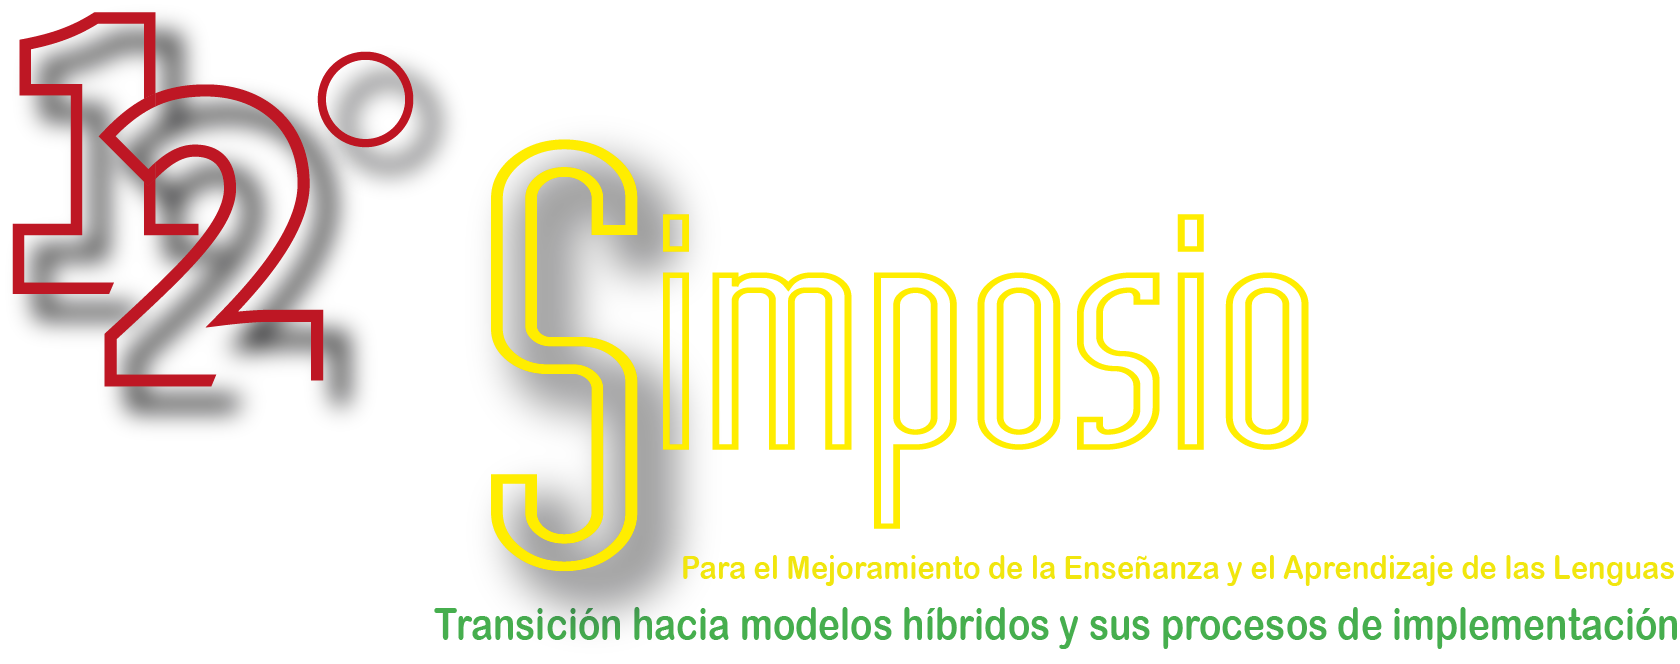  imagen del logo 12vo Simposio